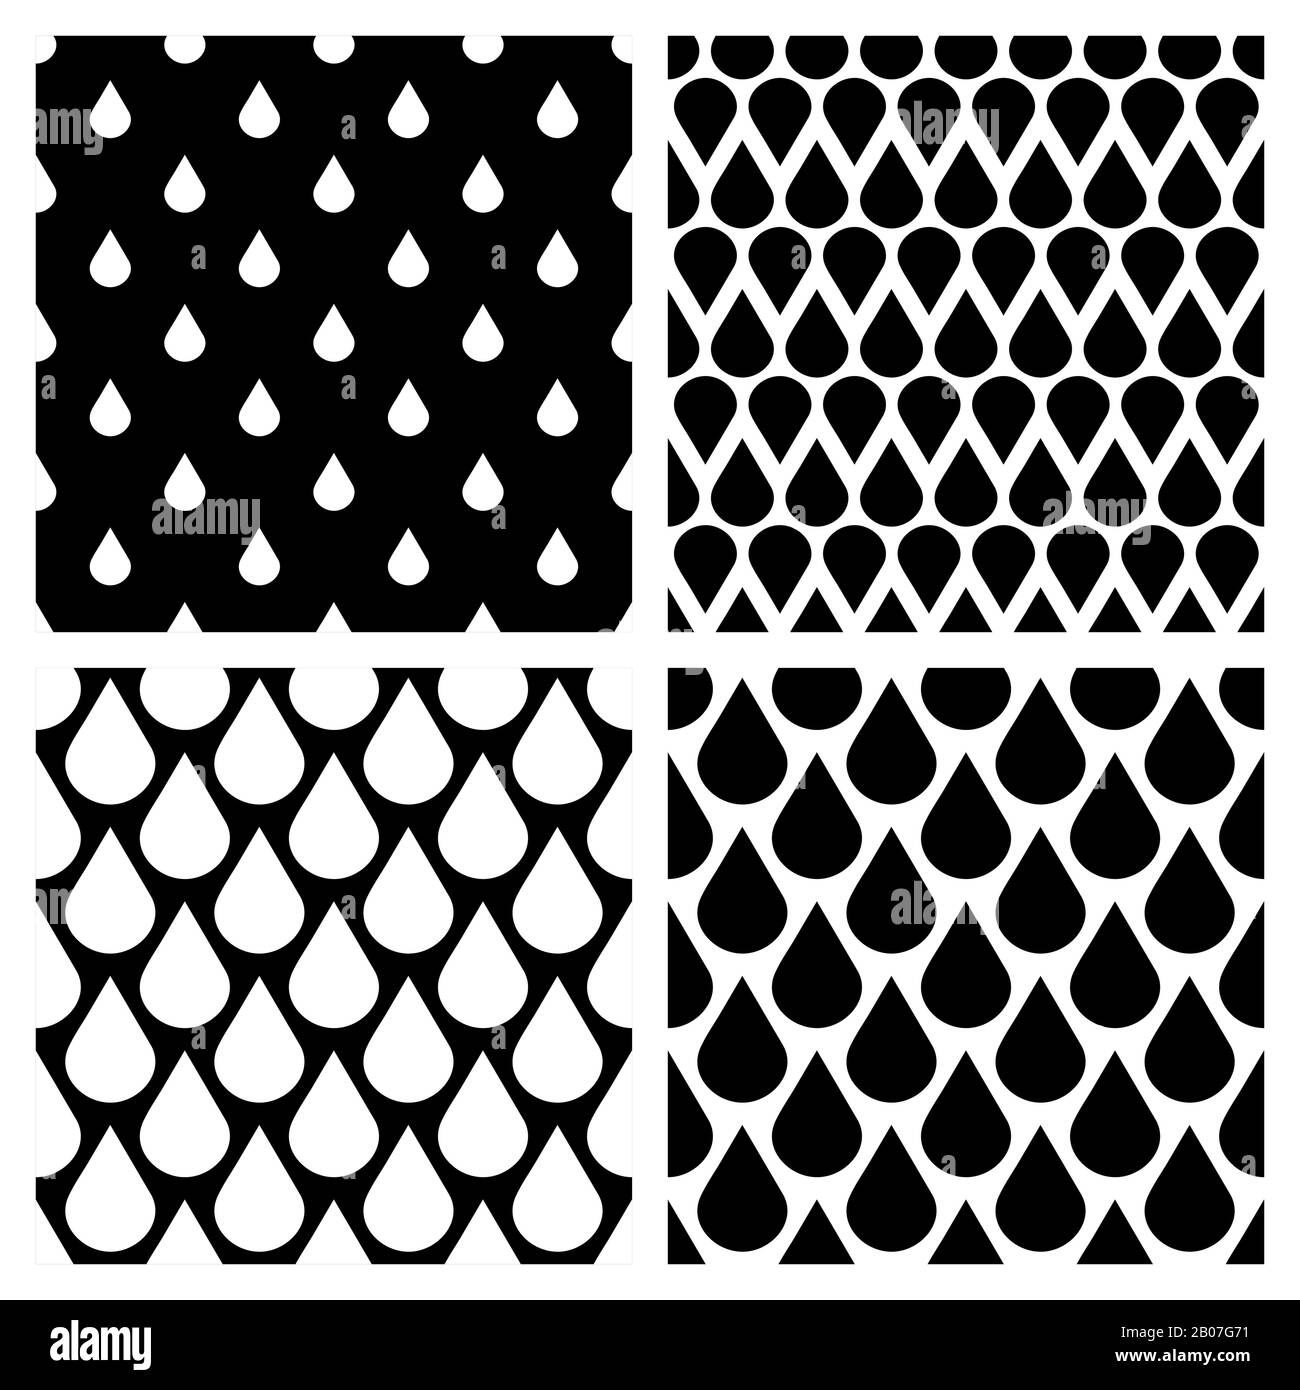 L'ensemble d'eau vectorielle chute des motifs sans couture en noir et blanc. Illustration de l'eau de pluie de fond Illustration de Vecteur